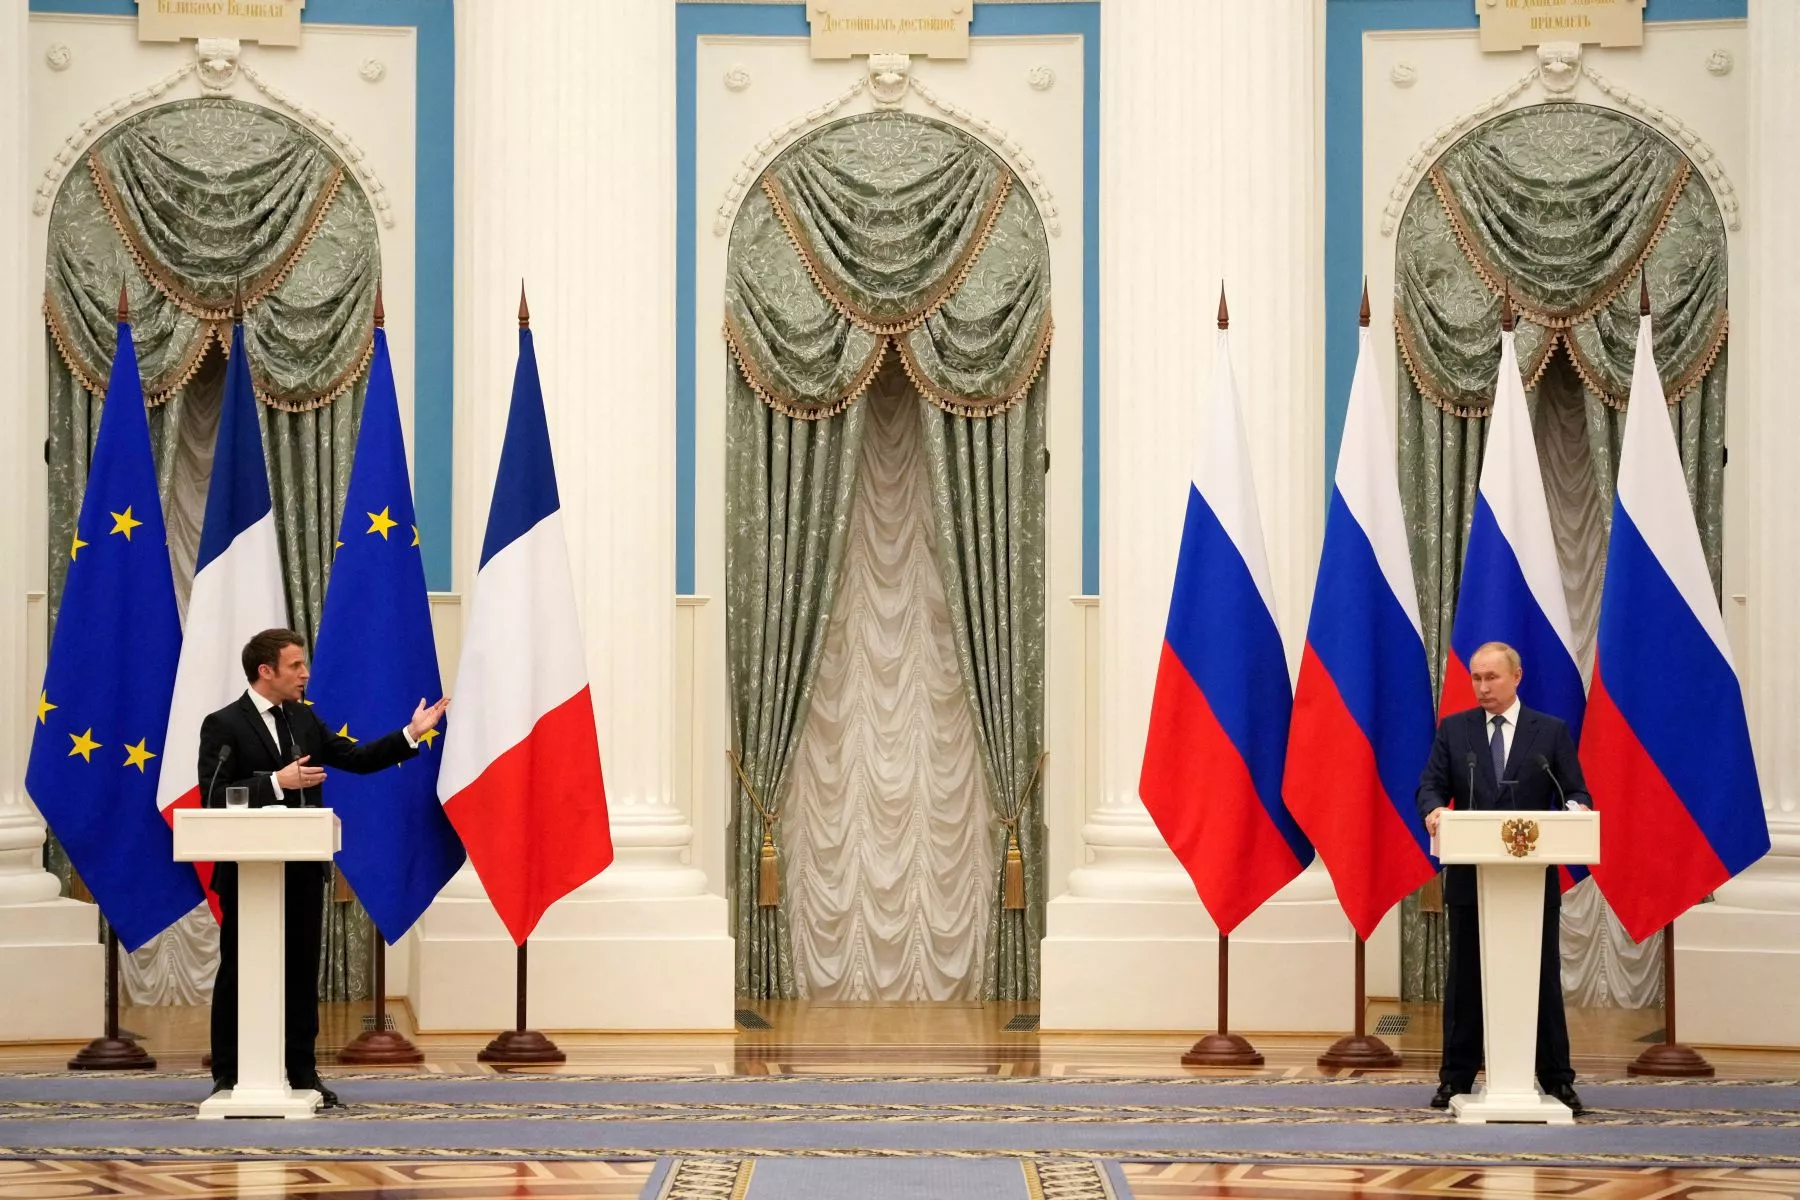 Эммануэль Макрон и Владимир Путин на брифинге после встречи